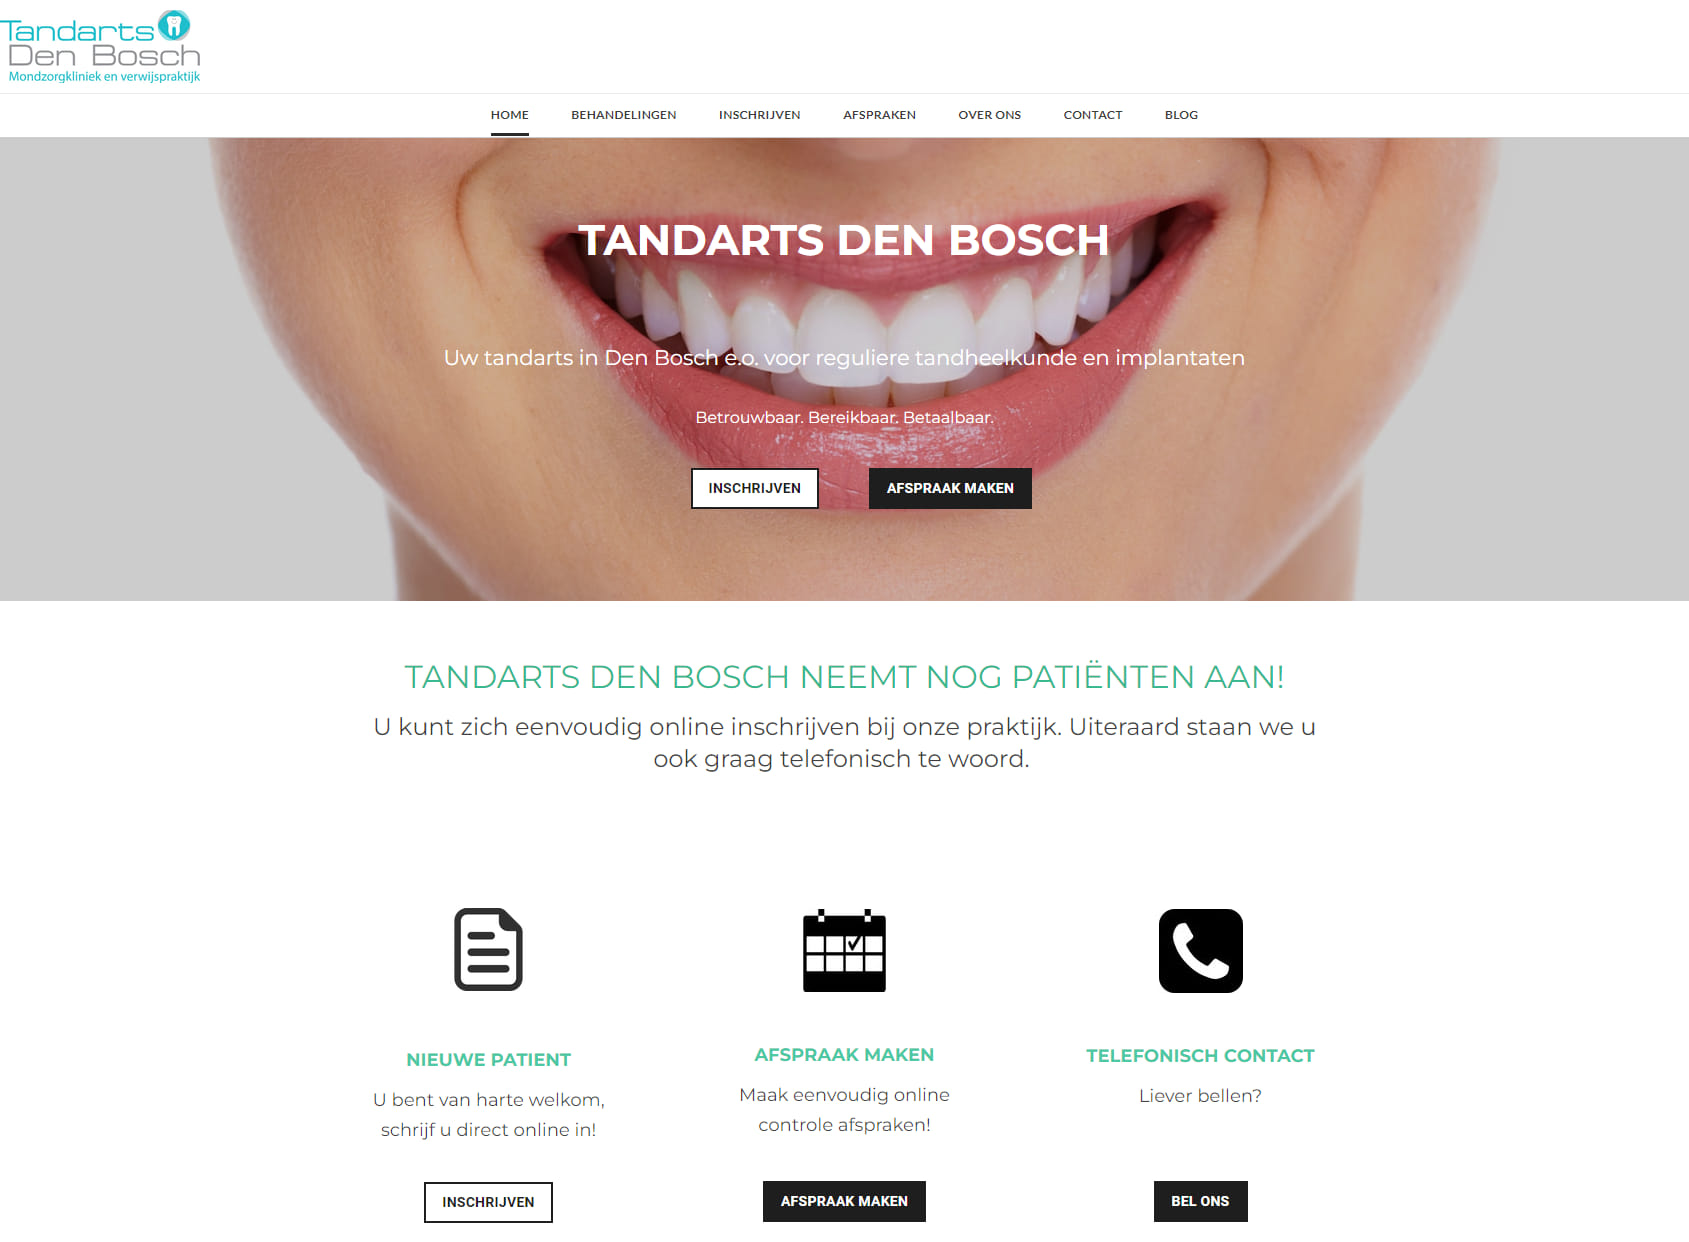 Tandarts Den Bosch Mondzorgkliniek en Verwijspraktijk